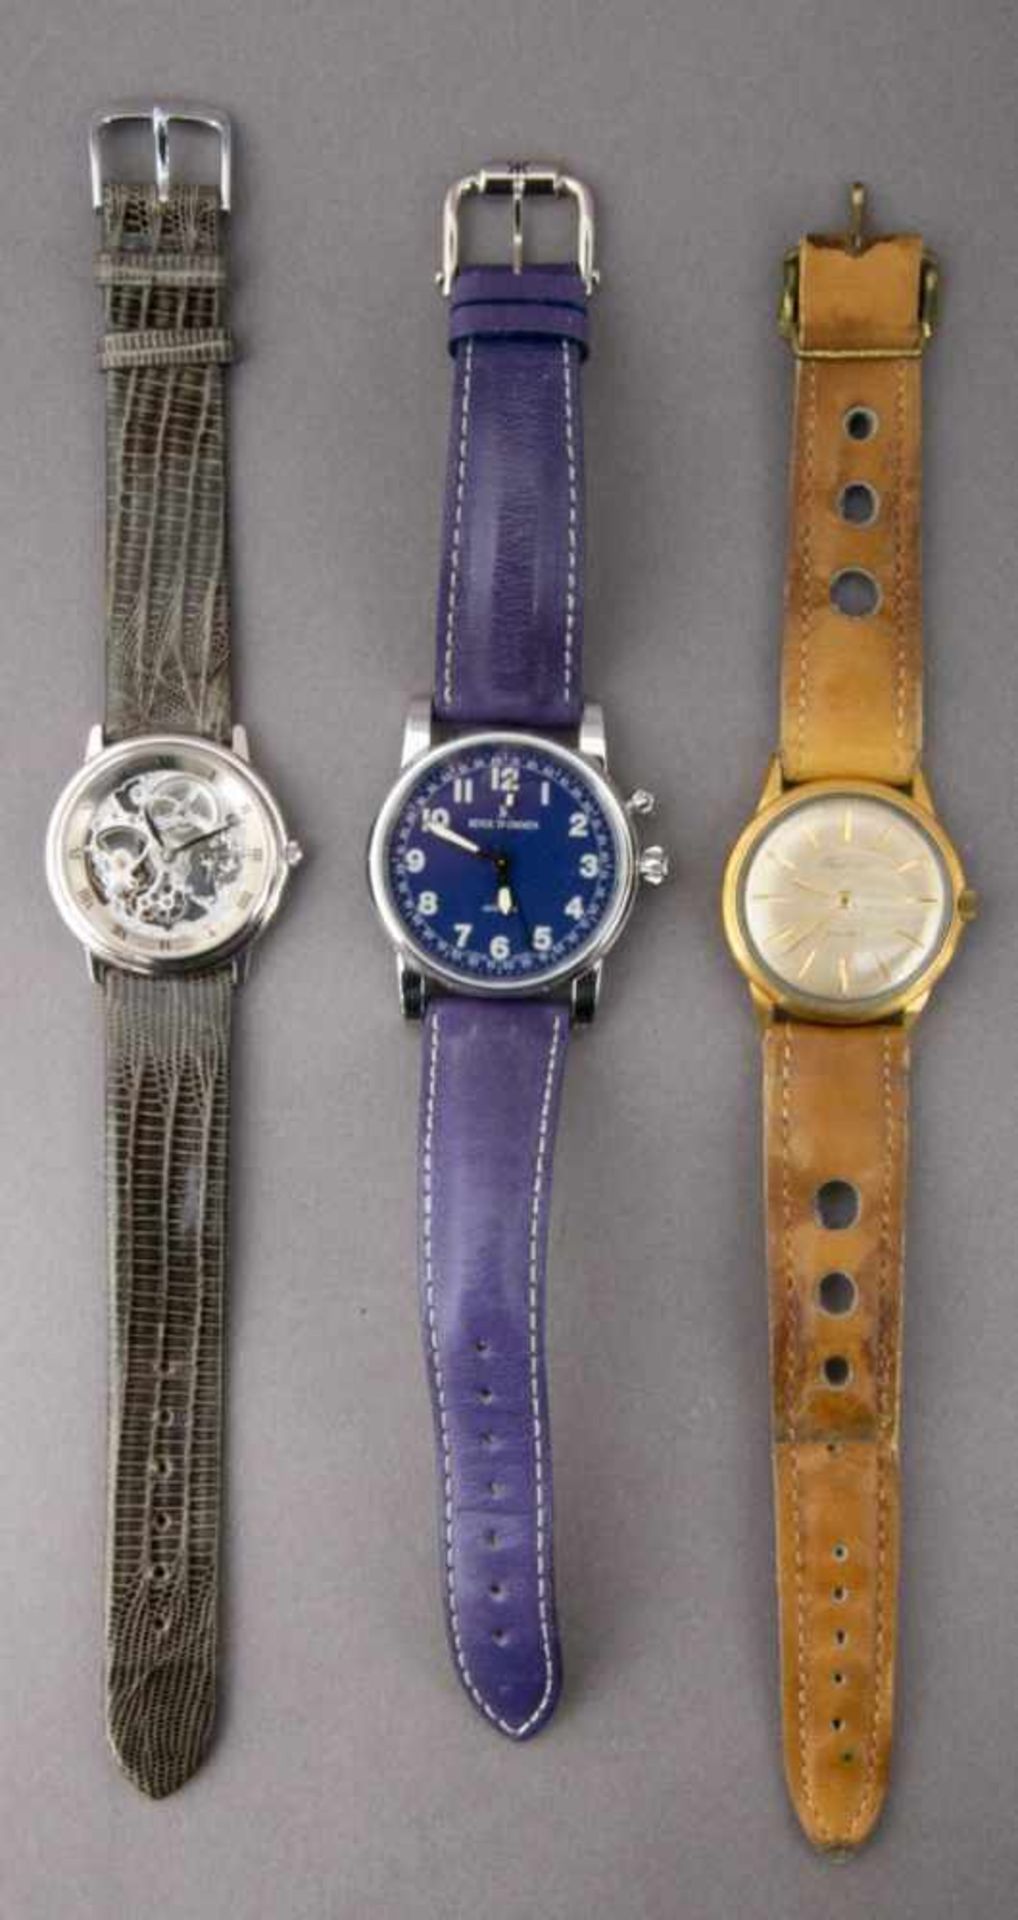 5teiliges Konvolut versch. Armbanduhren, alle ungeprüft. Versch. Alter, Größen, Materialien, - Bild 2 aus 16